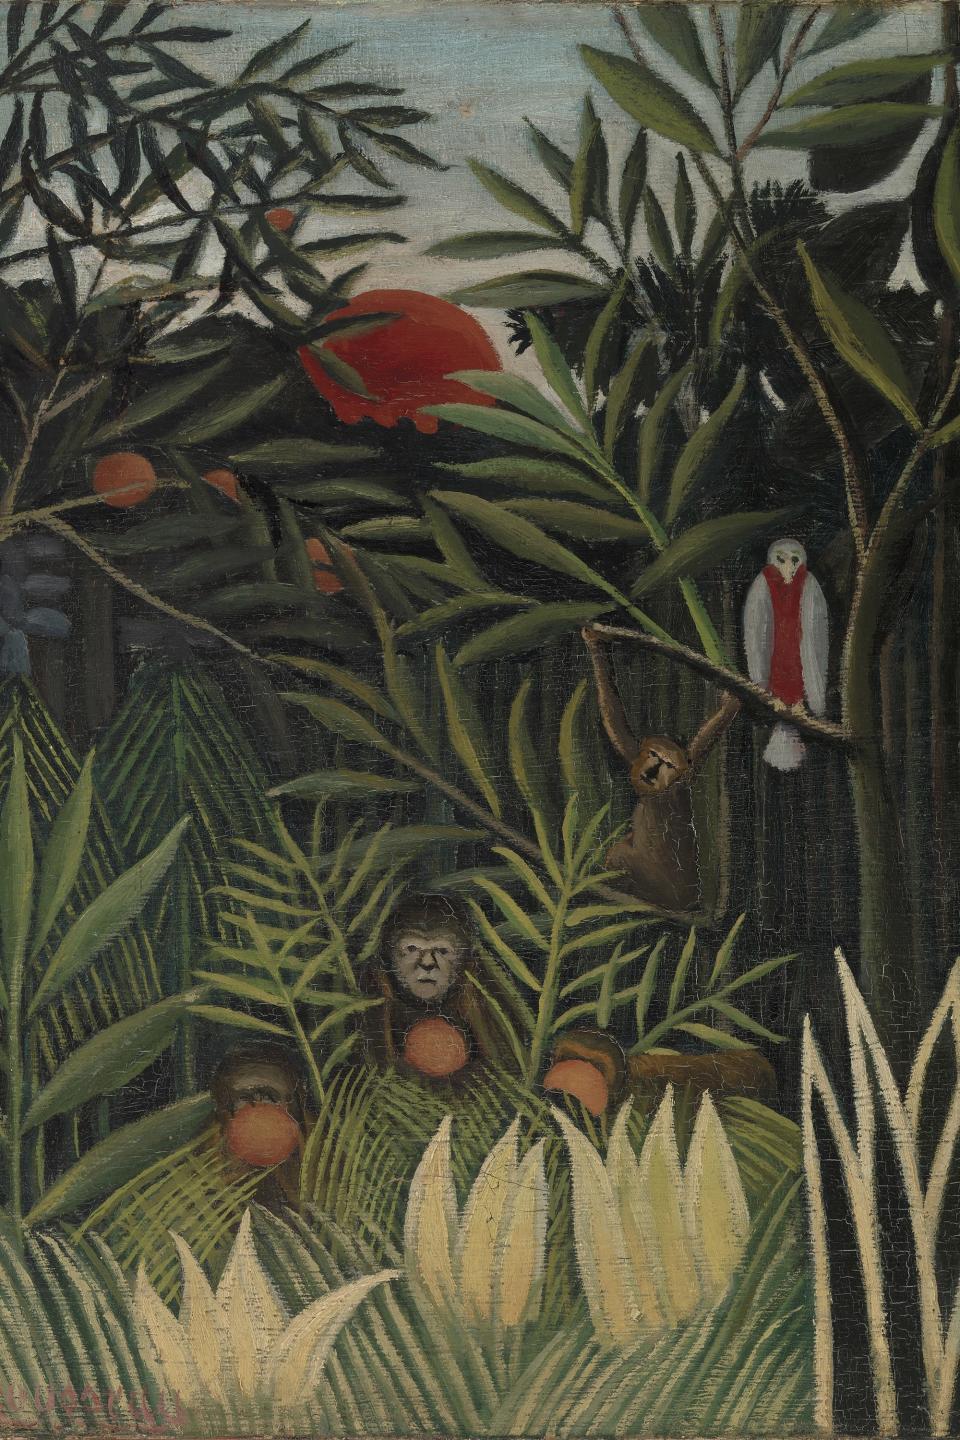 Monkeys and Parrot in the Virgin Forest (Singes et perroquet dans la forêt vierge), by Henri Rousseau, circa 1905.